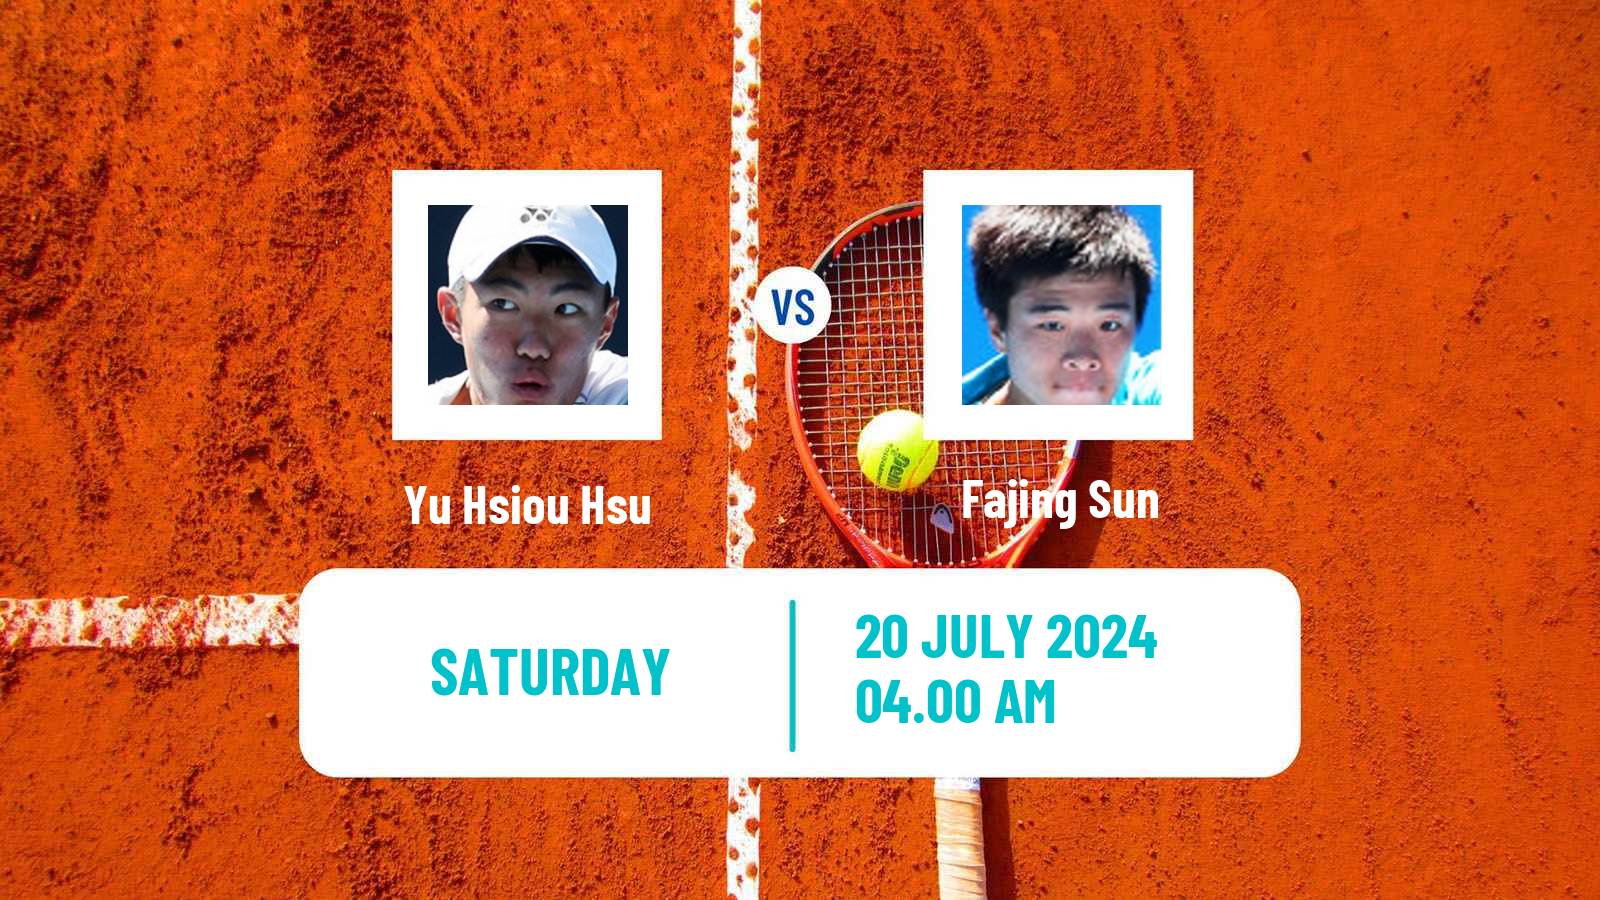 Tennis ITF M25 Tianjin 2 Men Yu Hsiou Hsu - Fajing Sun